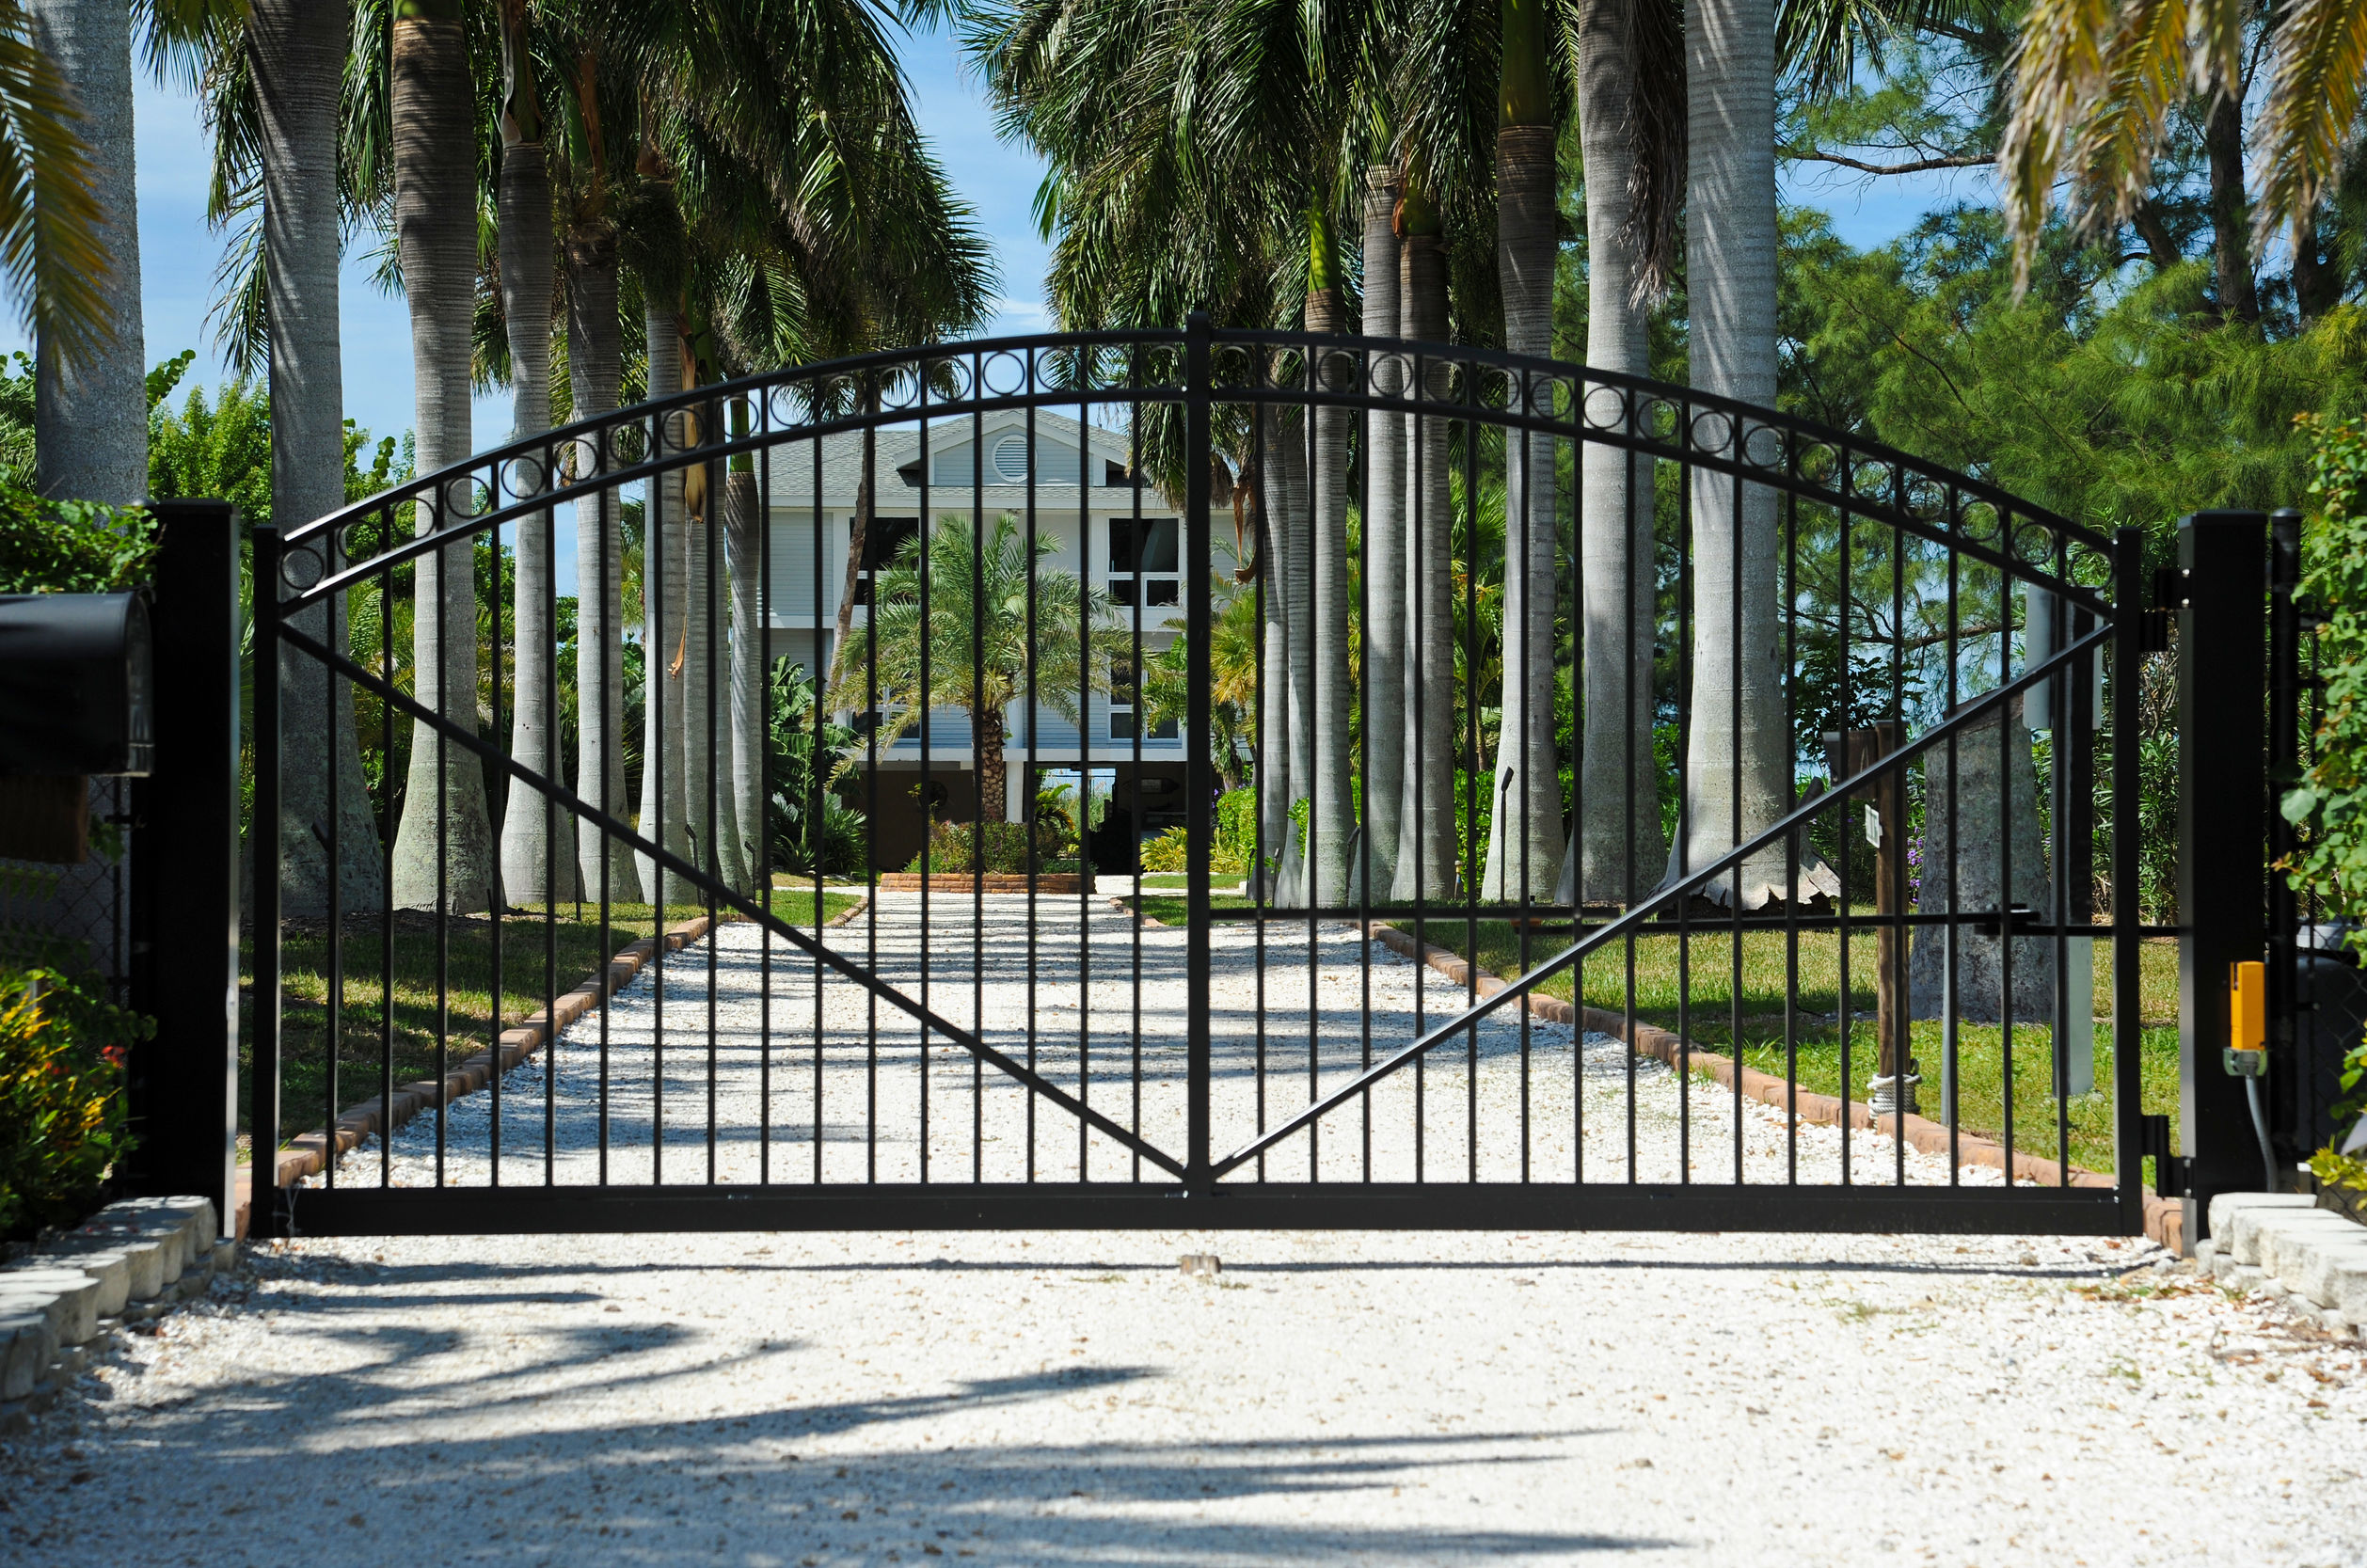 choisir son portail, Grand portail donnant sur une allée à l'entrée d'une villa cossue, portail en aluminium